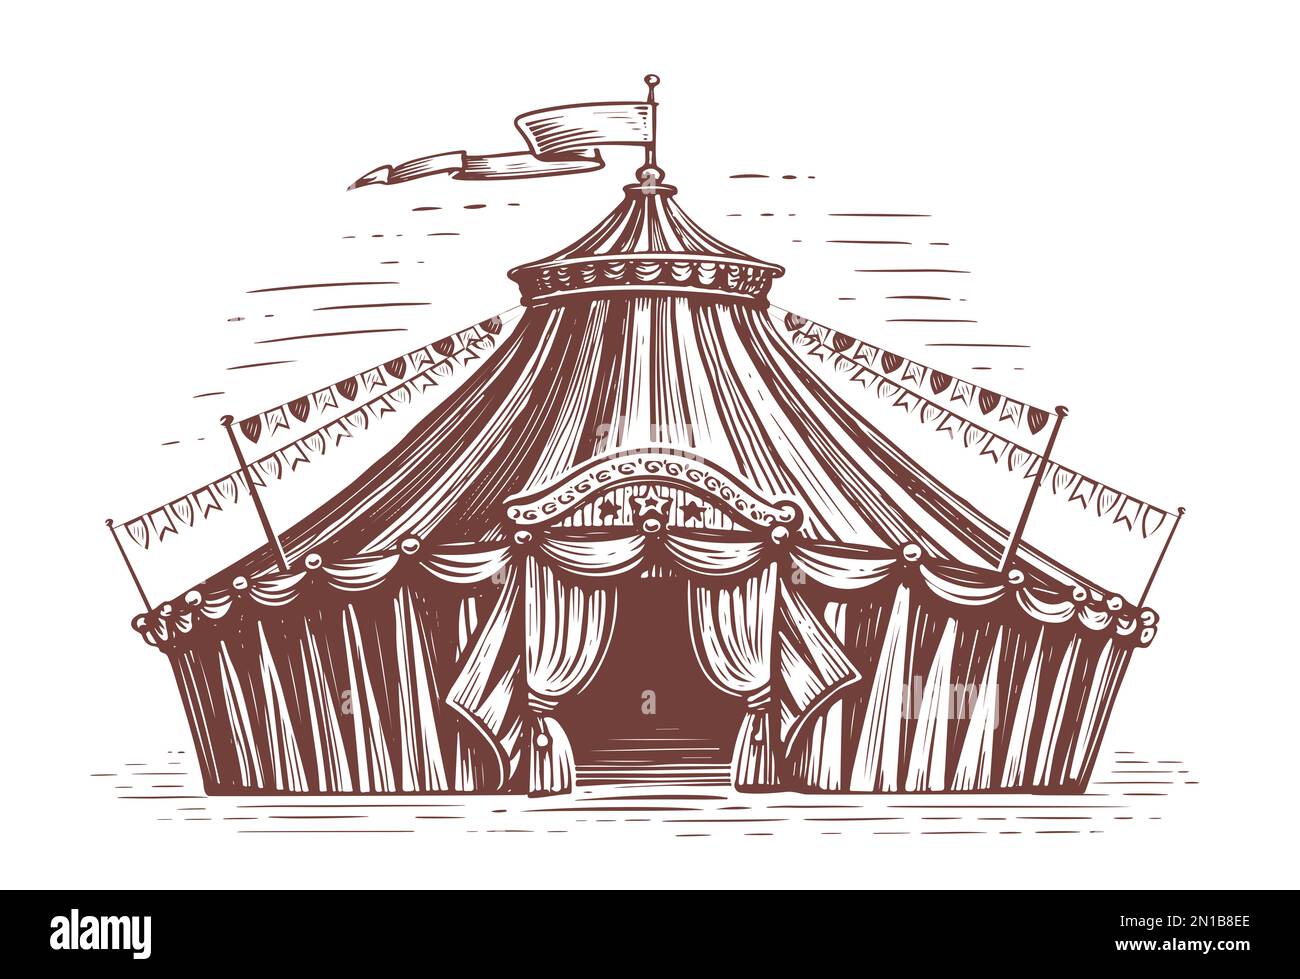 Tente de cirque rétro à rayures. Festival de vacances, foire. Illustration d'un croquis vintage dessiné à la main Banque D'Images